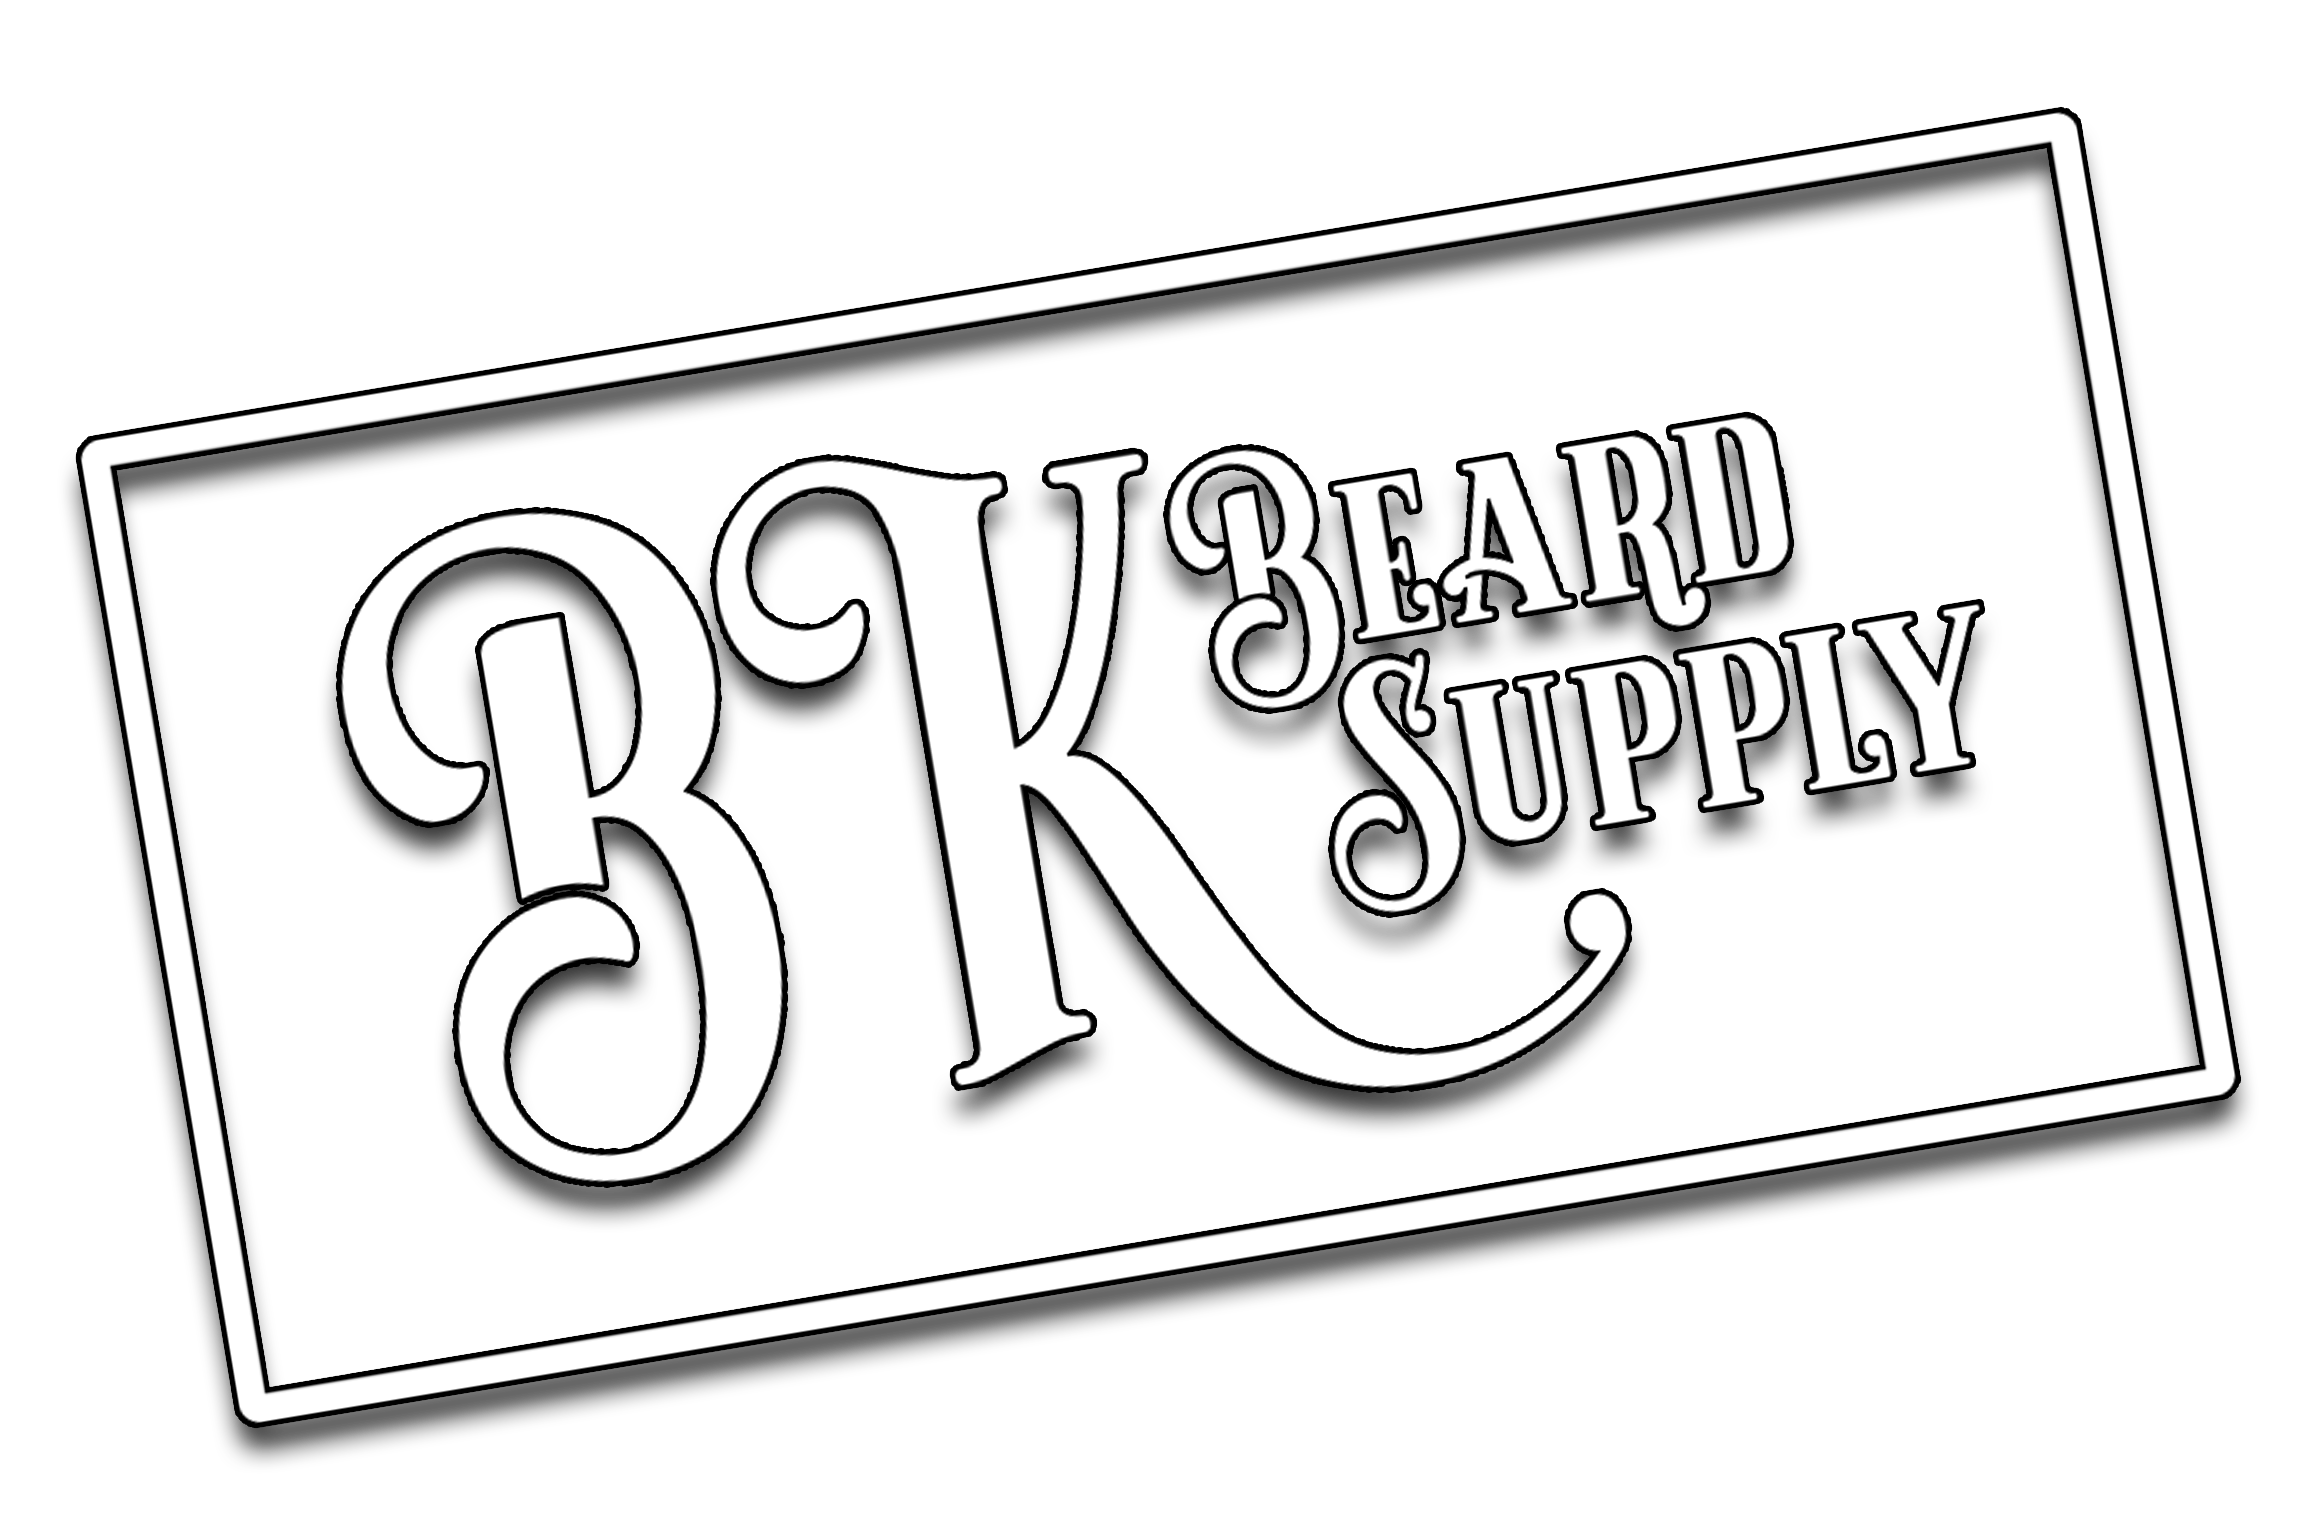 BK Beards